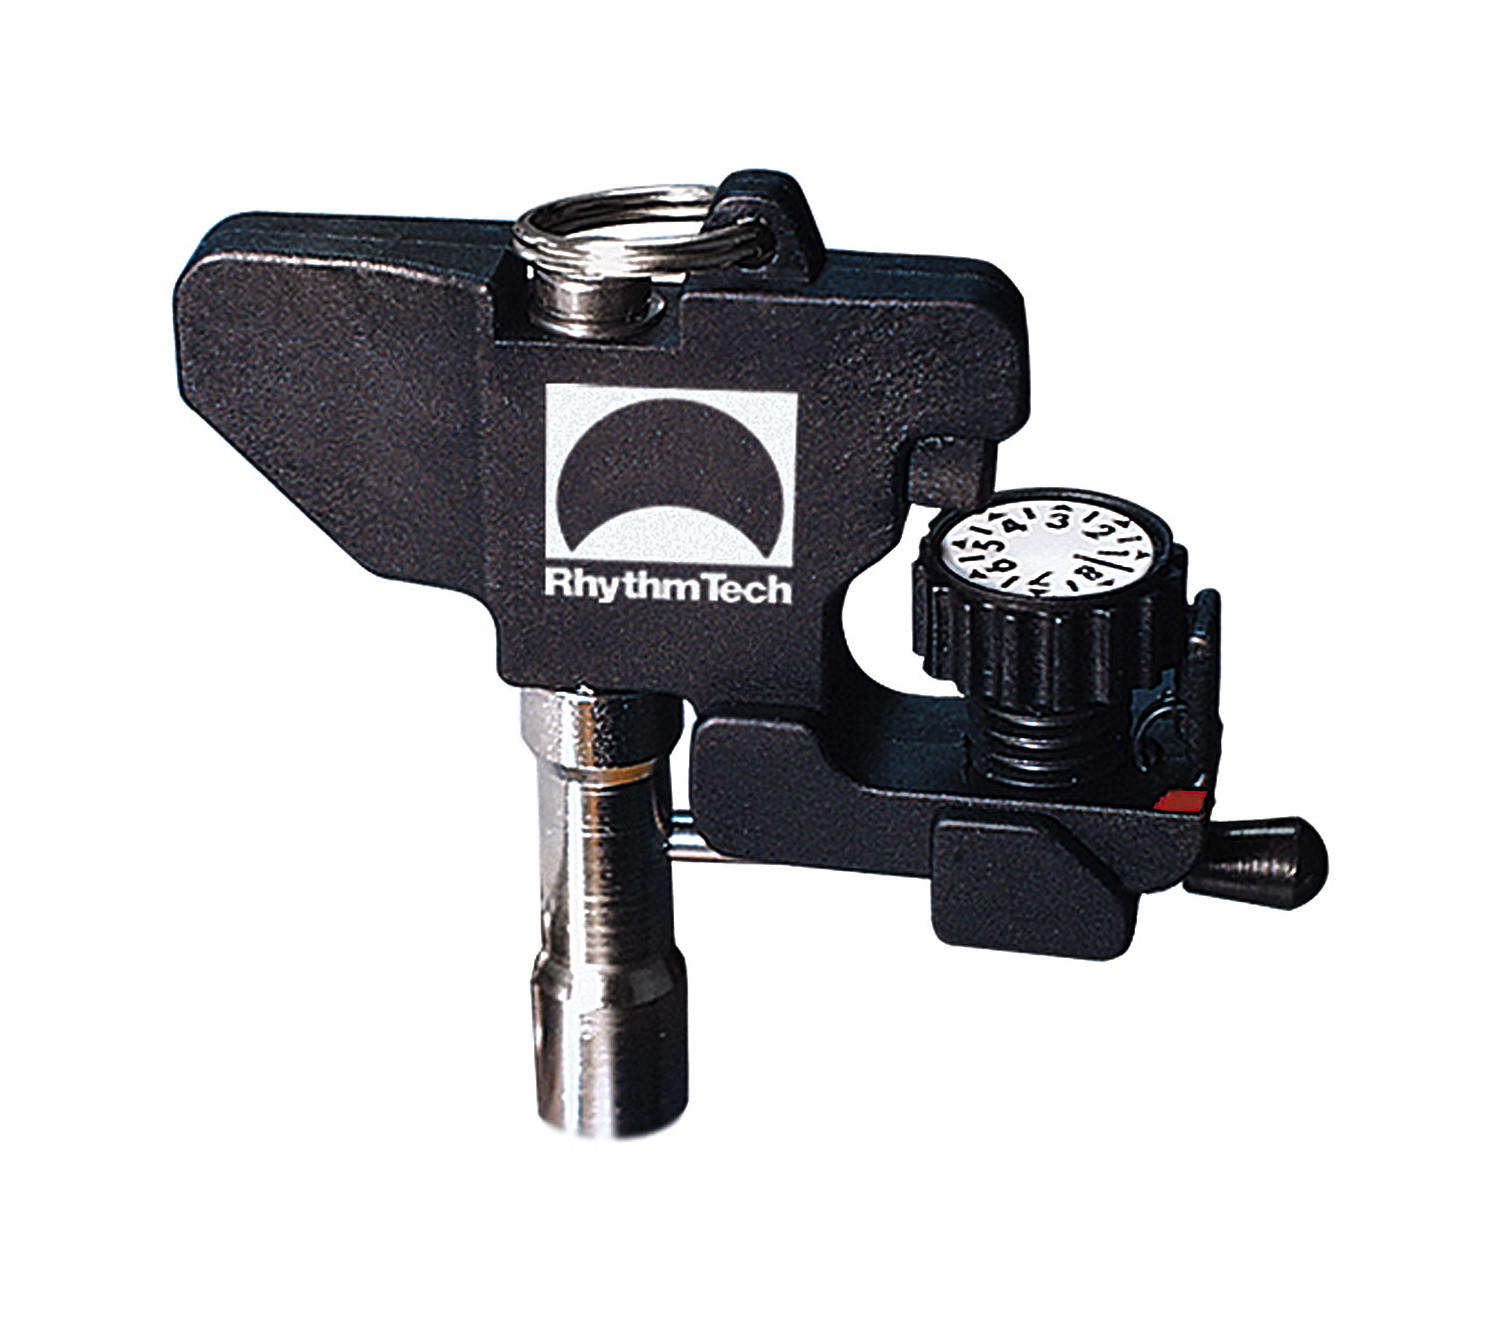 Rhythm Tech Rhythm Tech RT7350 Protorq Torque Wrench and Drum Key